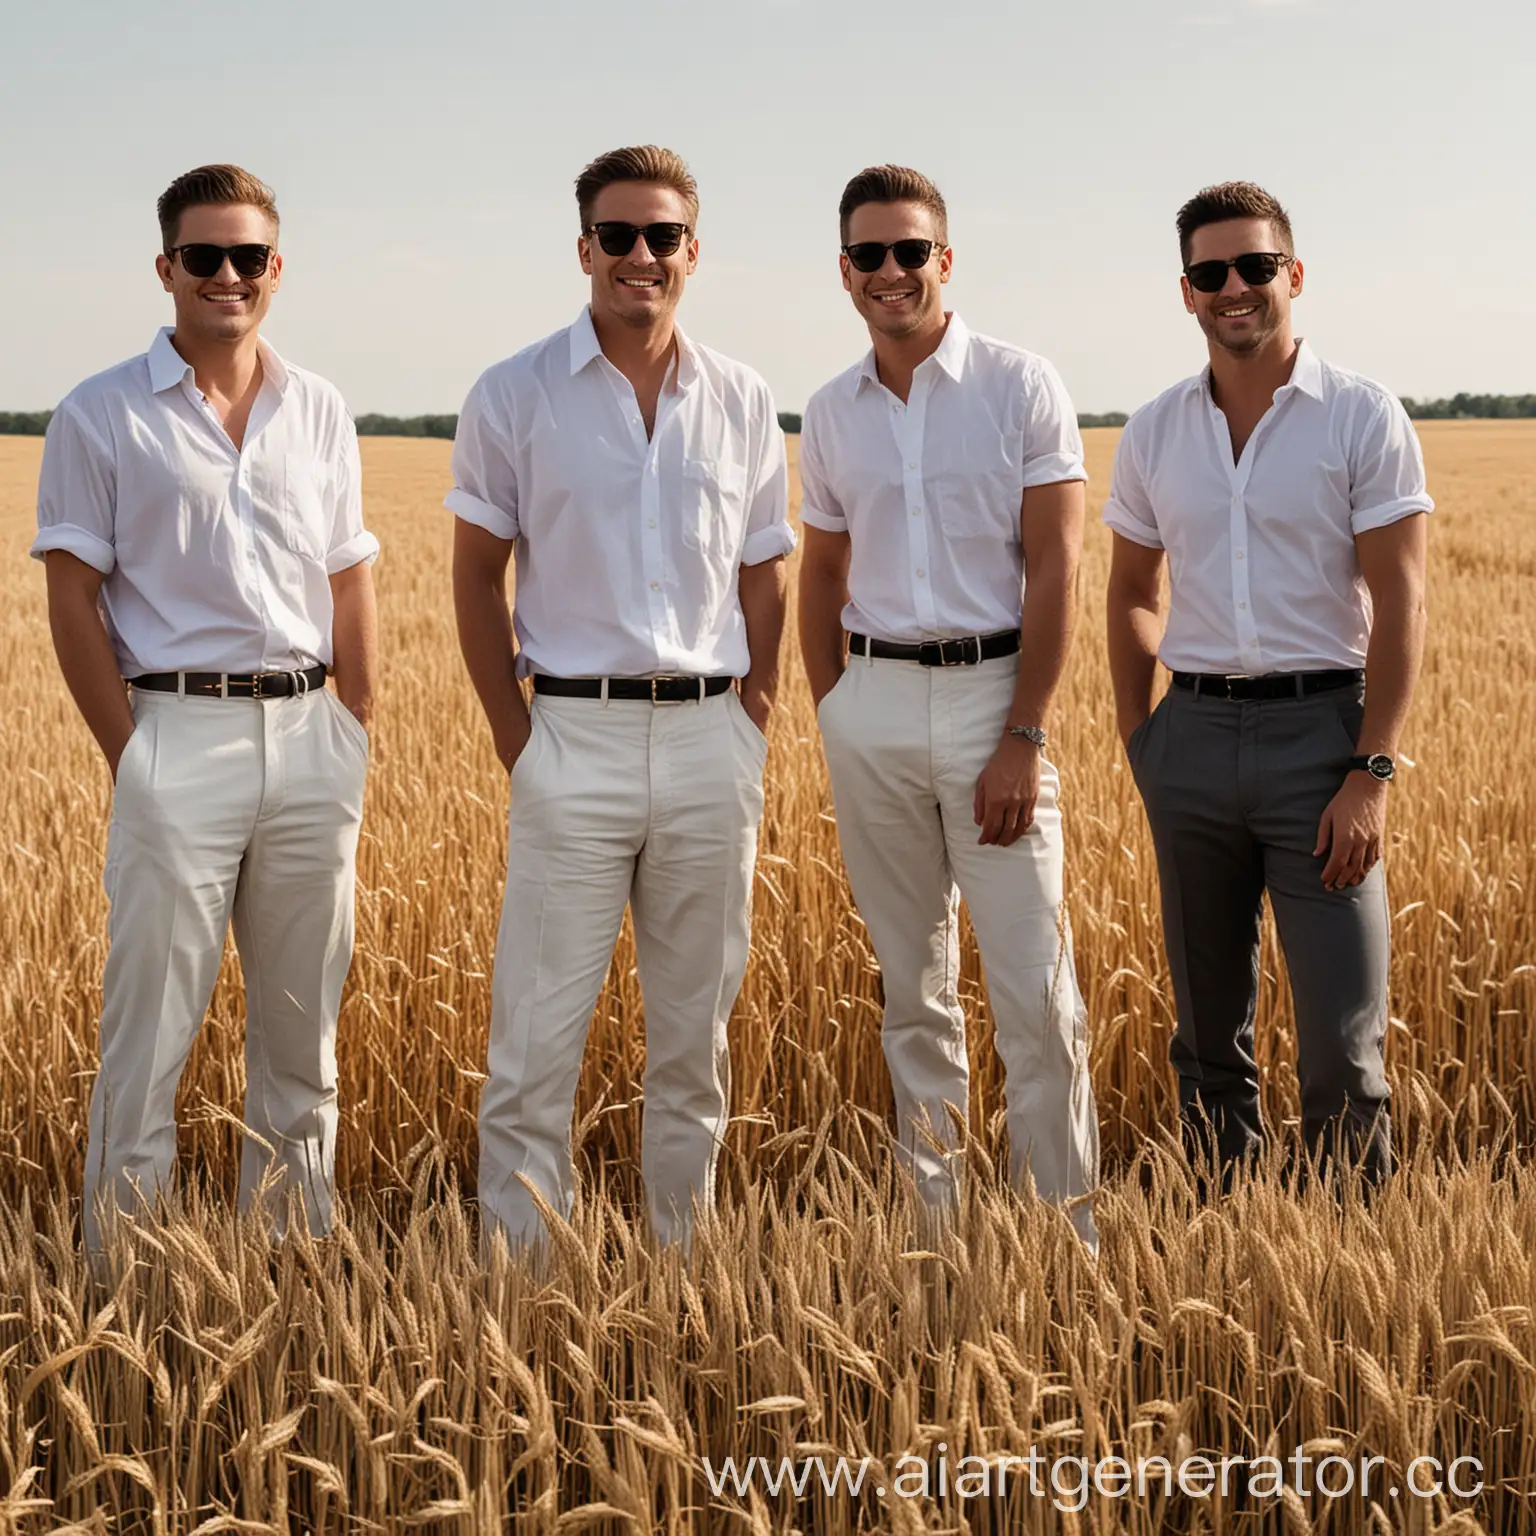 4 мужчины в белых рубашках, черных штанах, стоят в поле с зерном, немного улыбаются, черные очки на лицах